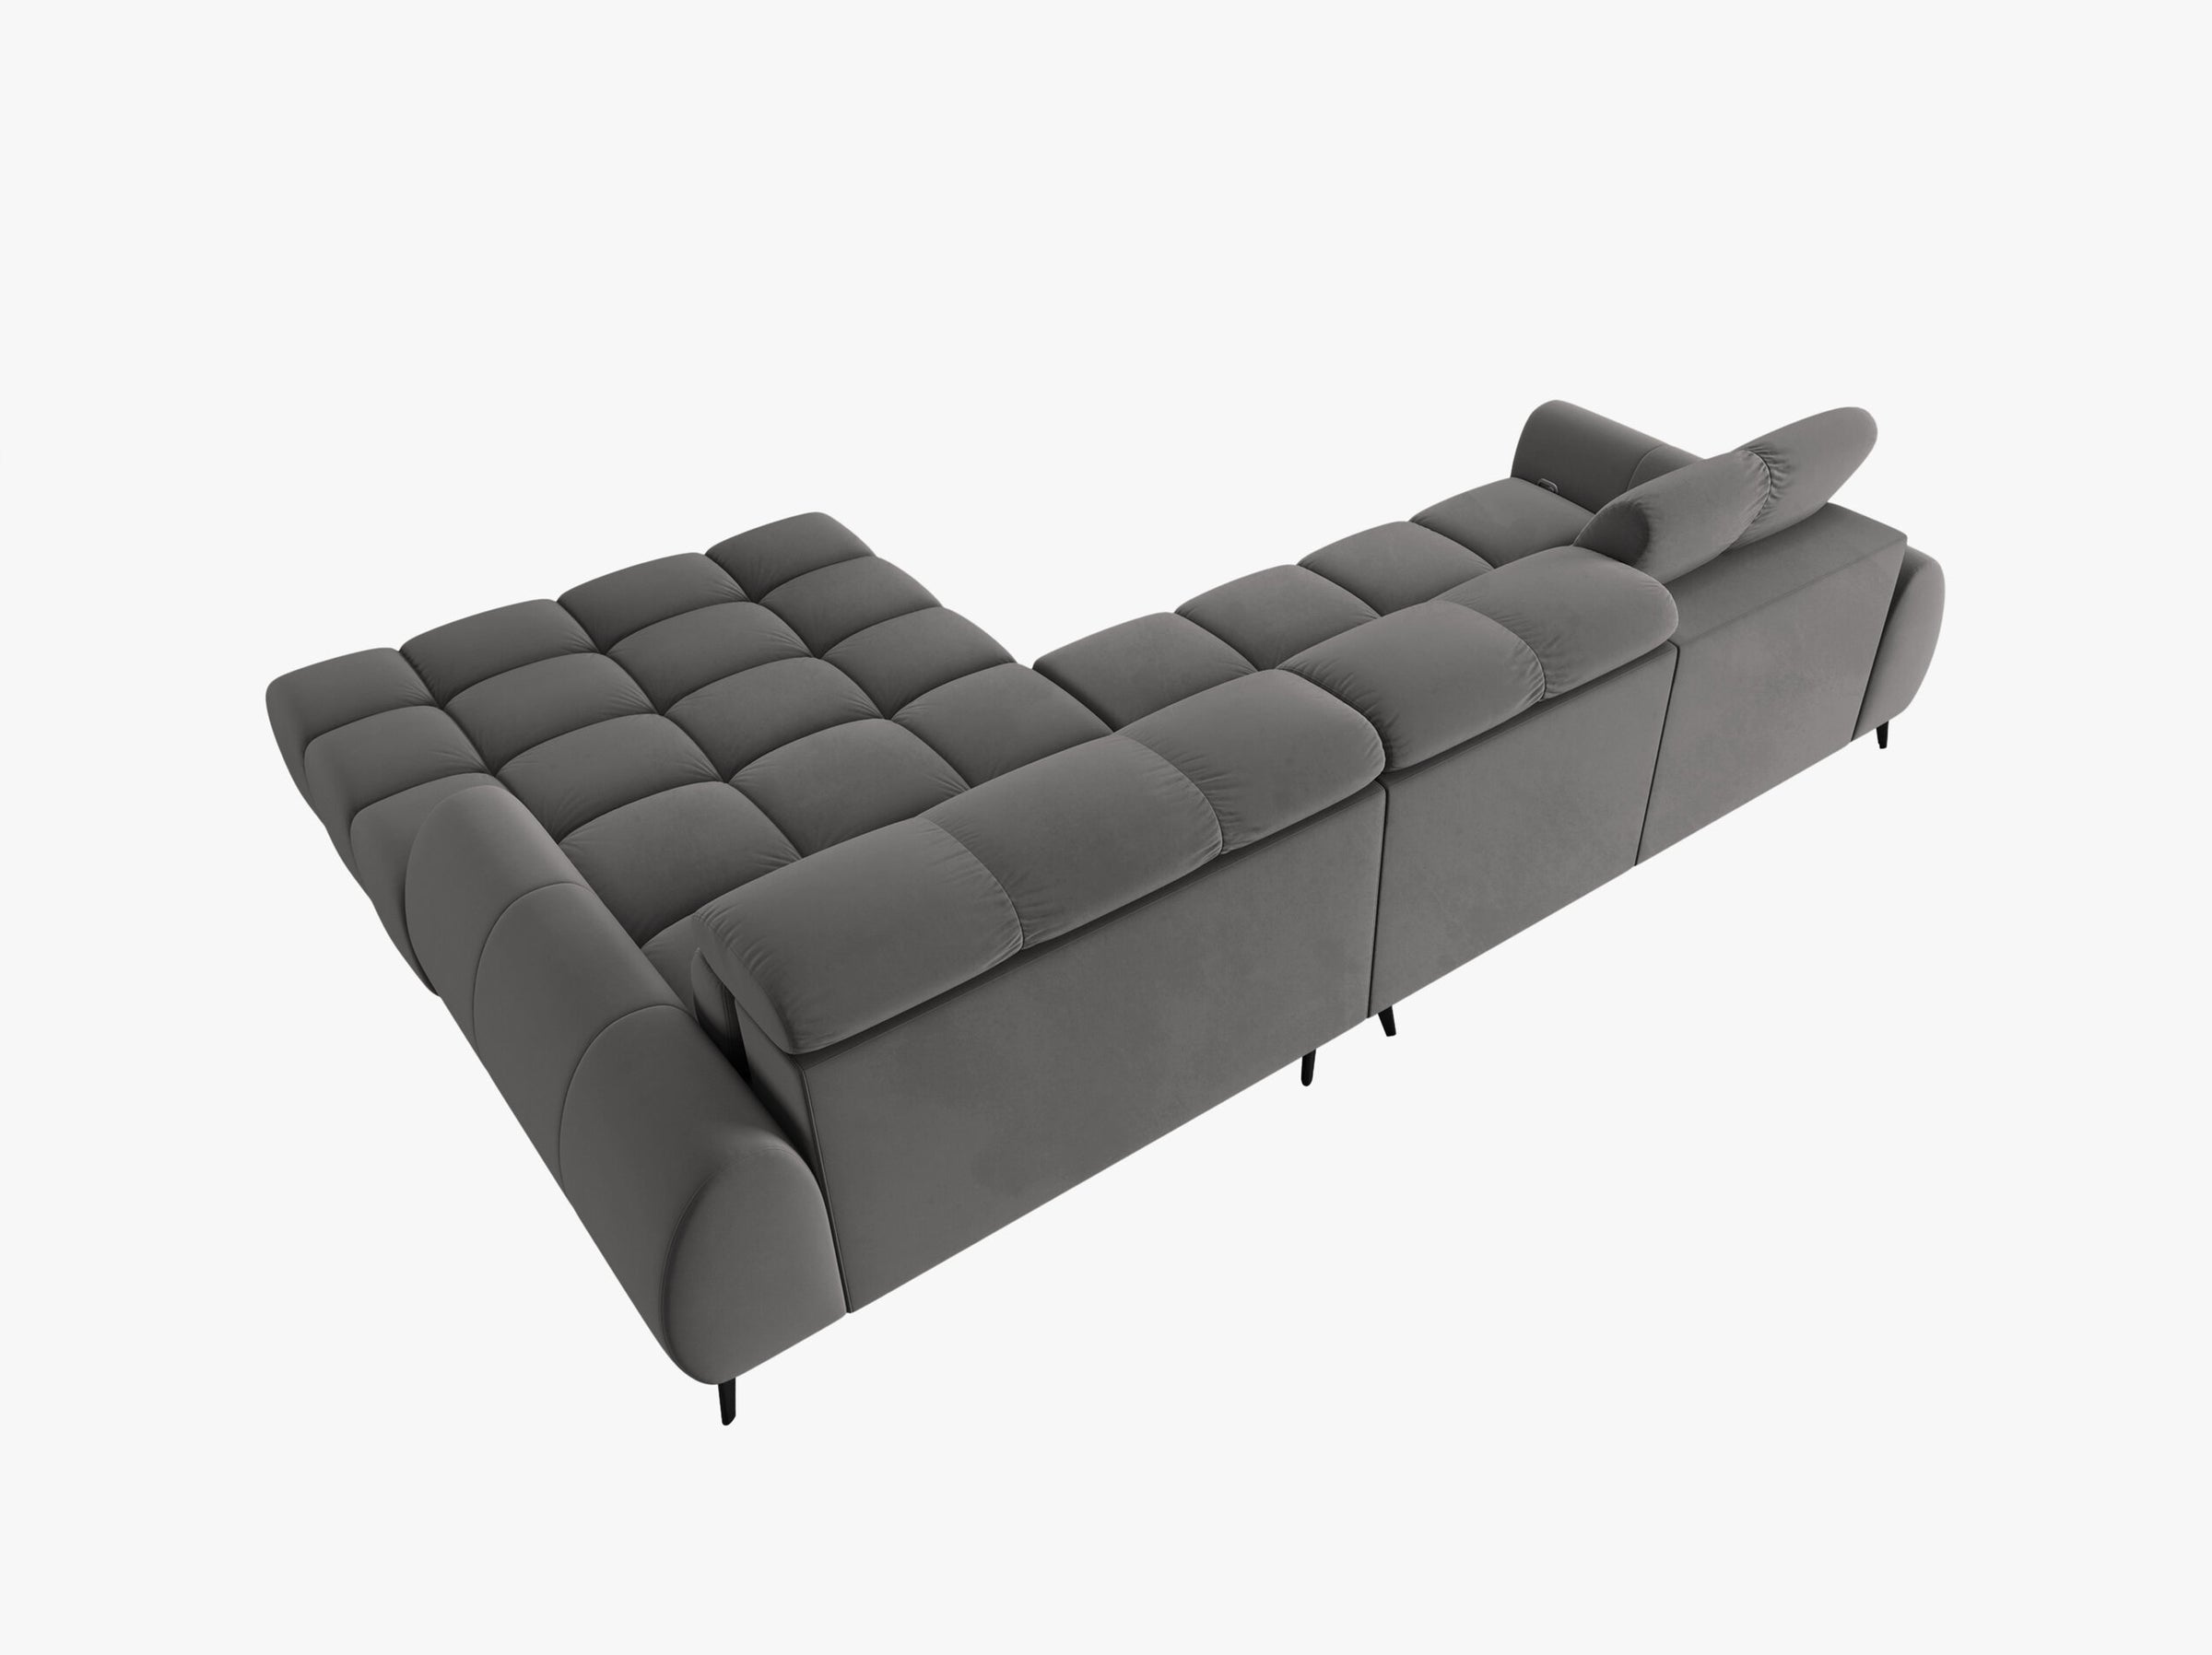 Alyse sofas velvet light grey